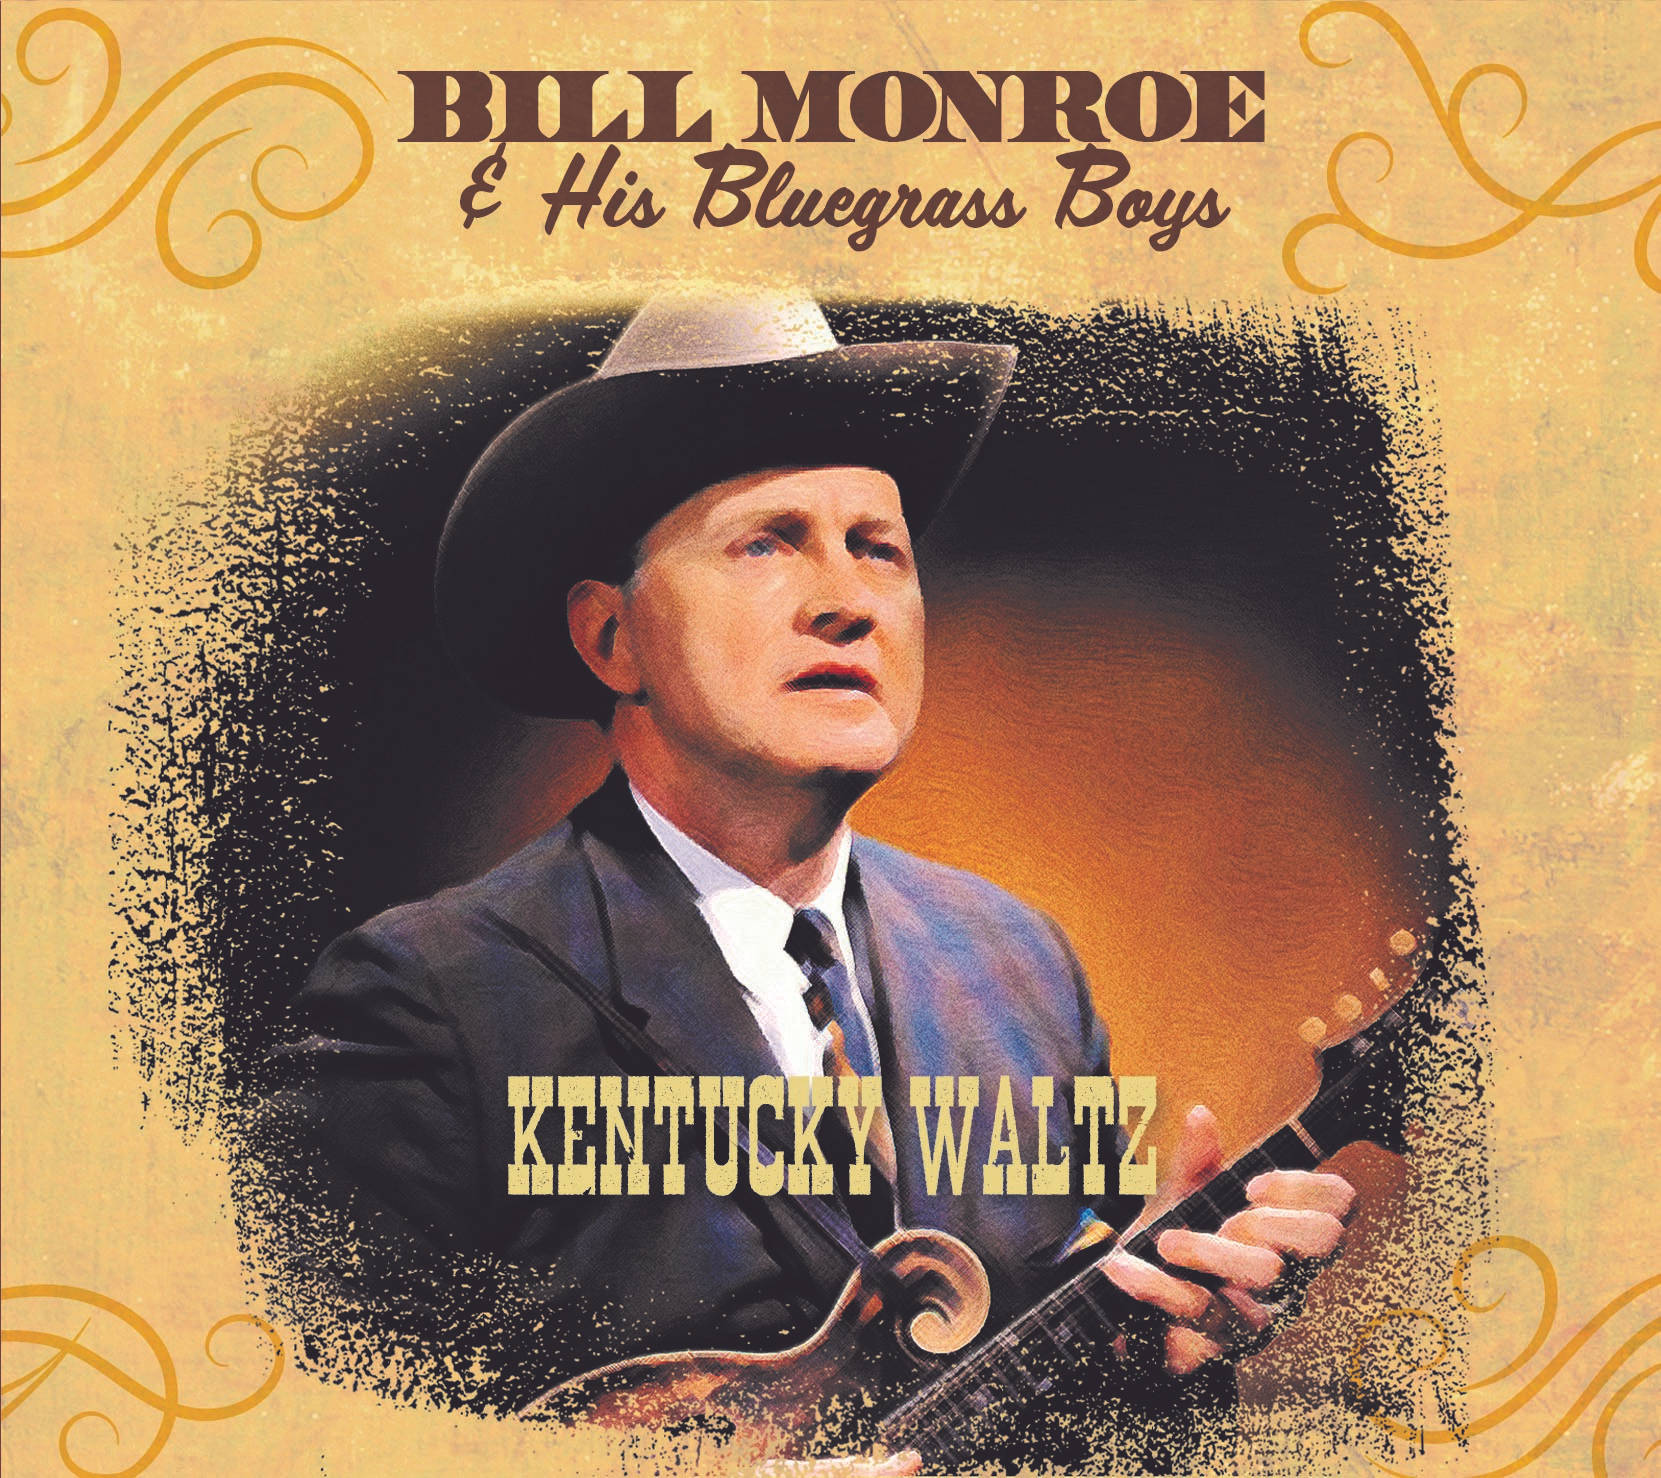 Bill Monroe og hans Bluegrass Boys Kentucky Waltz Album Cover Wallpaper Wallpaper